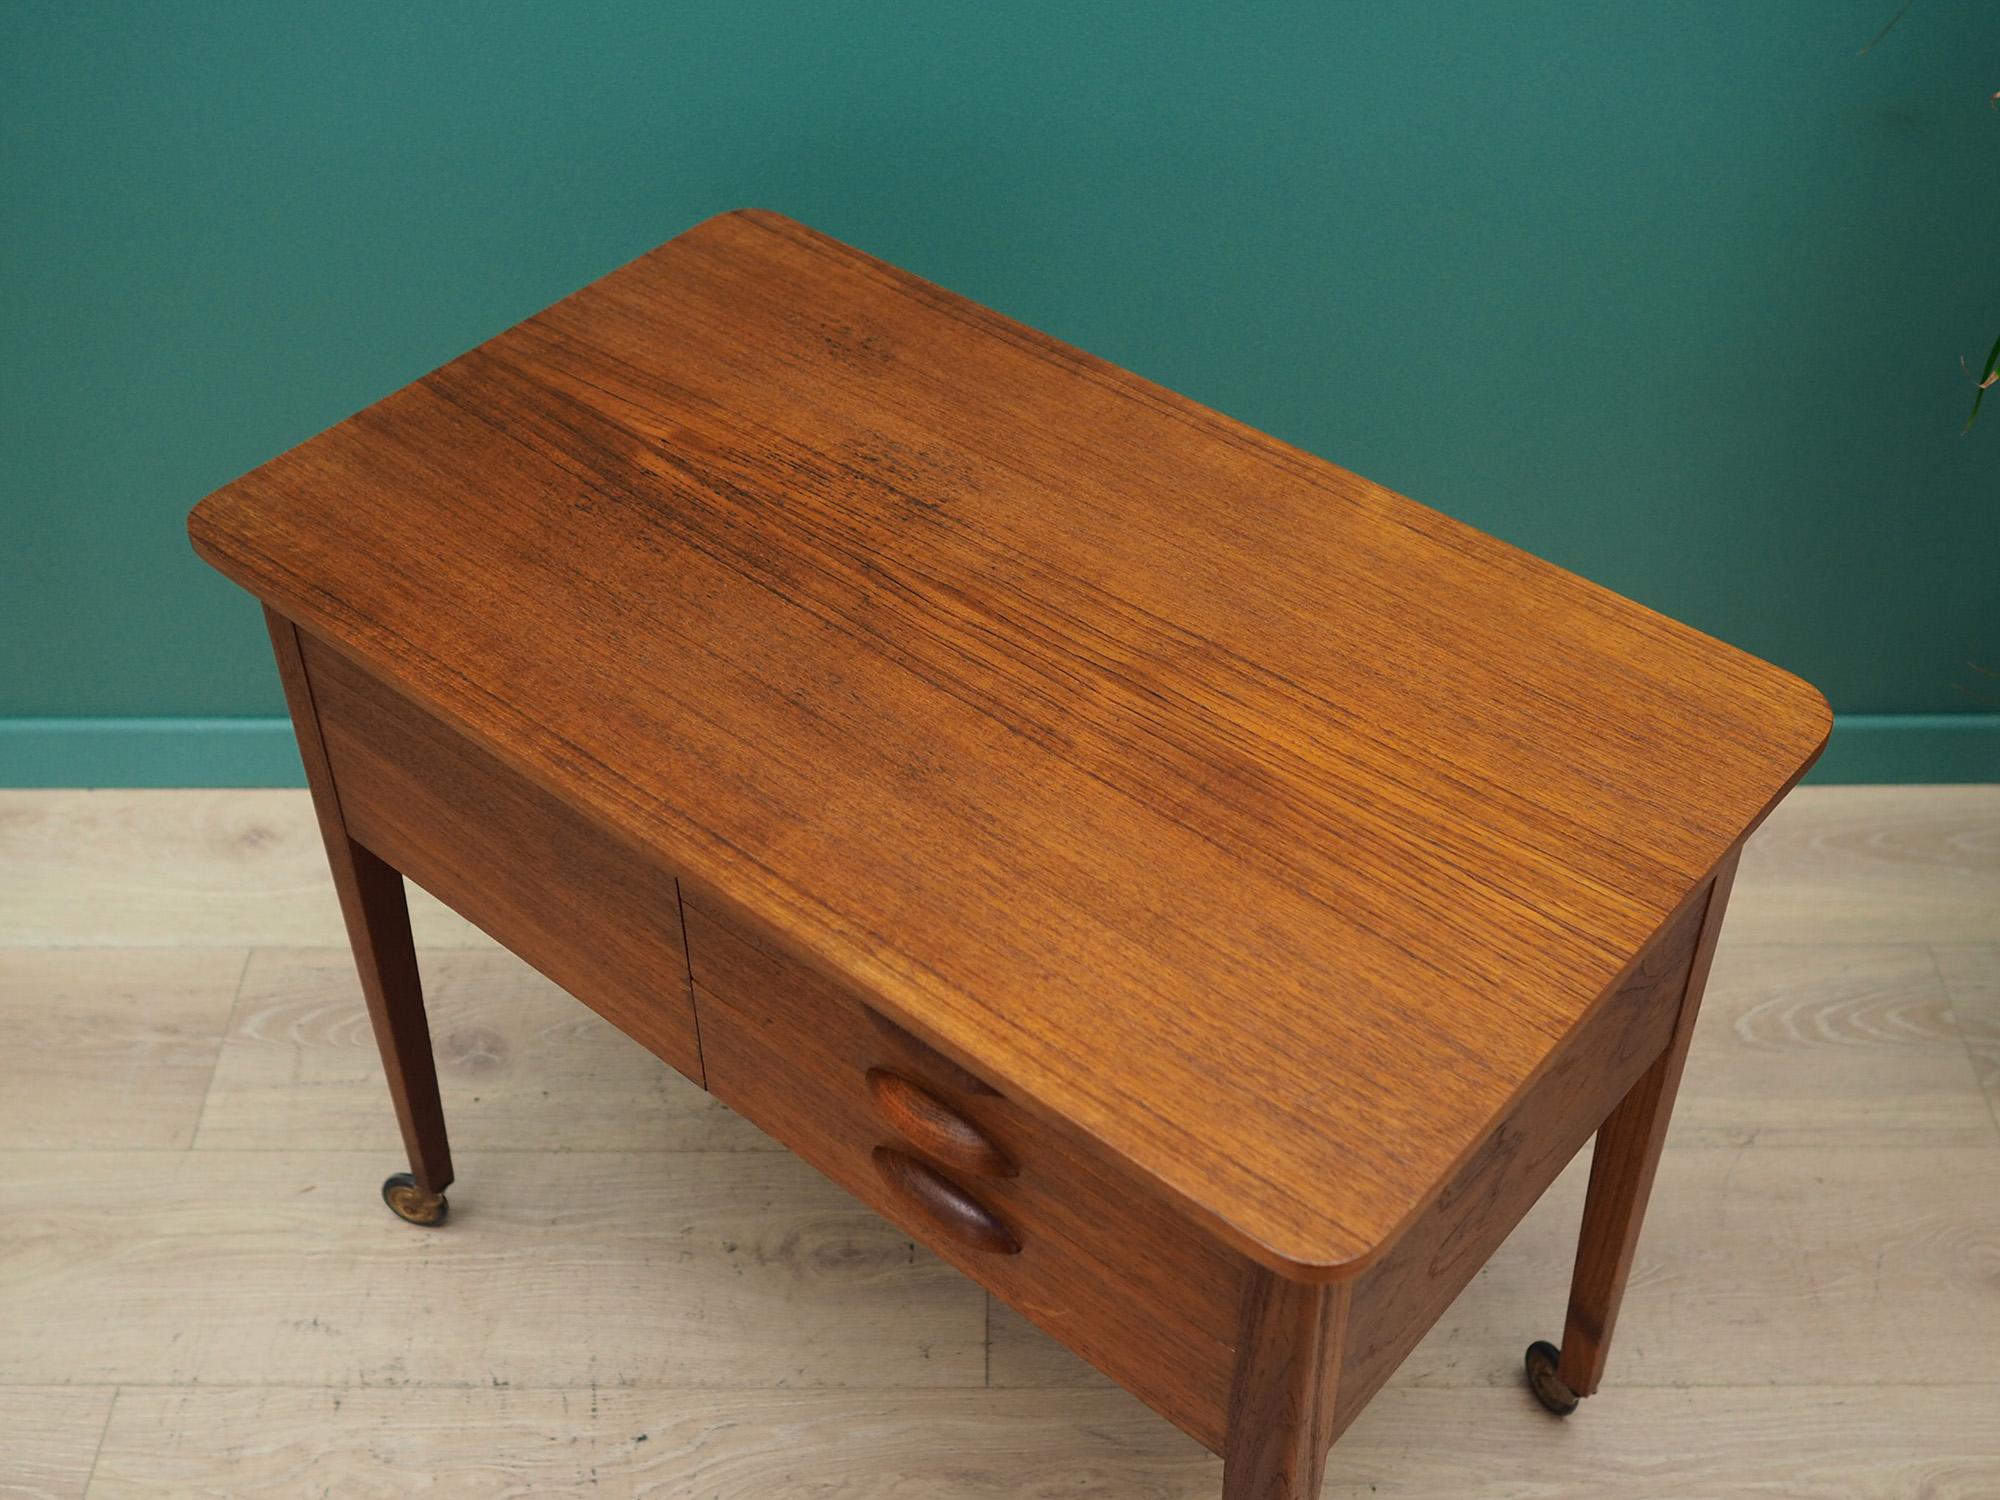 Teak Sewing Table 1960s-1970s Scandinavian Design